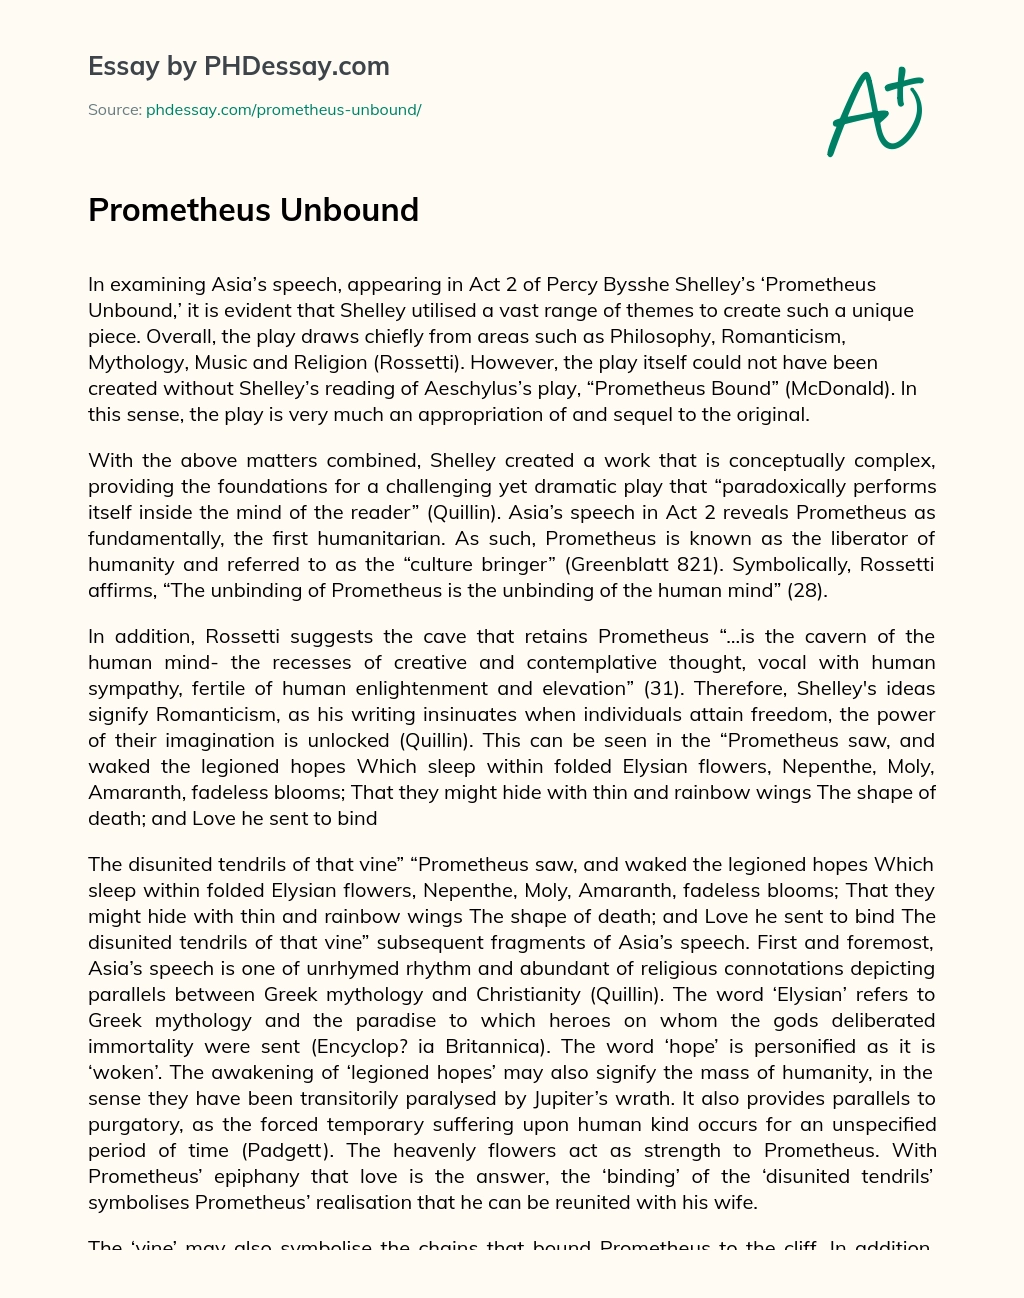 Prometheus Unbound essay